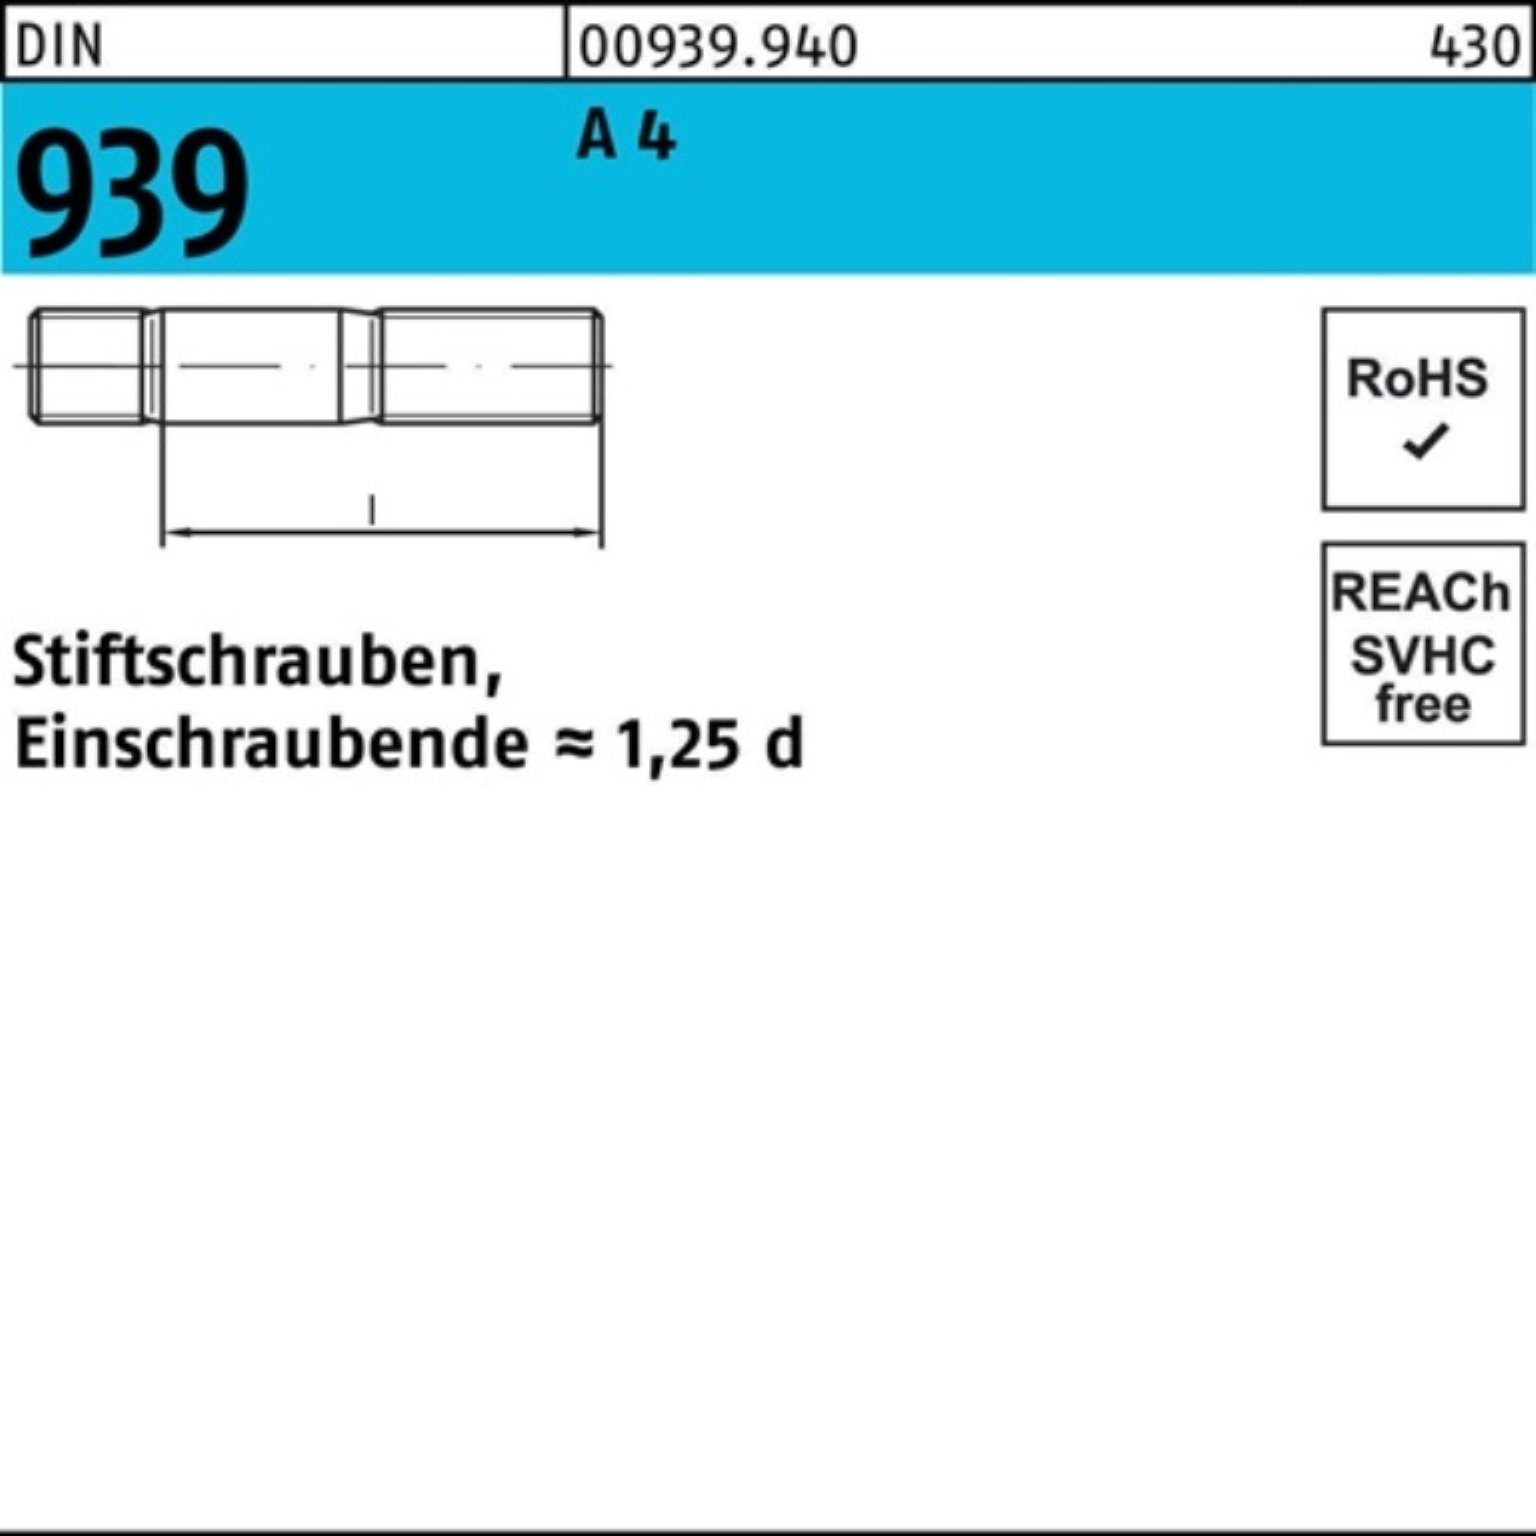 4 25 45 DIN 100er Reyher M8x Pack Einschraubende=1,25d Stiftschraube Stiftschraube A St 939